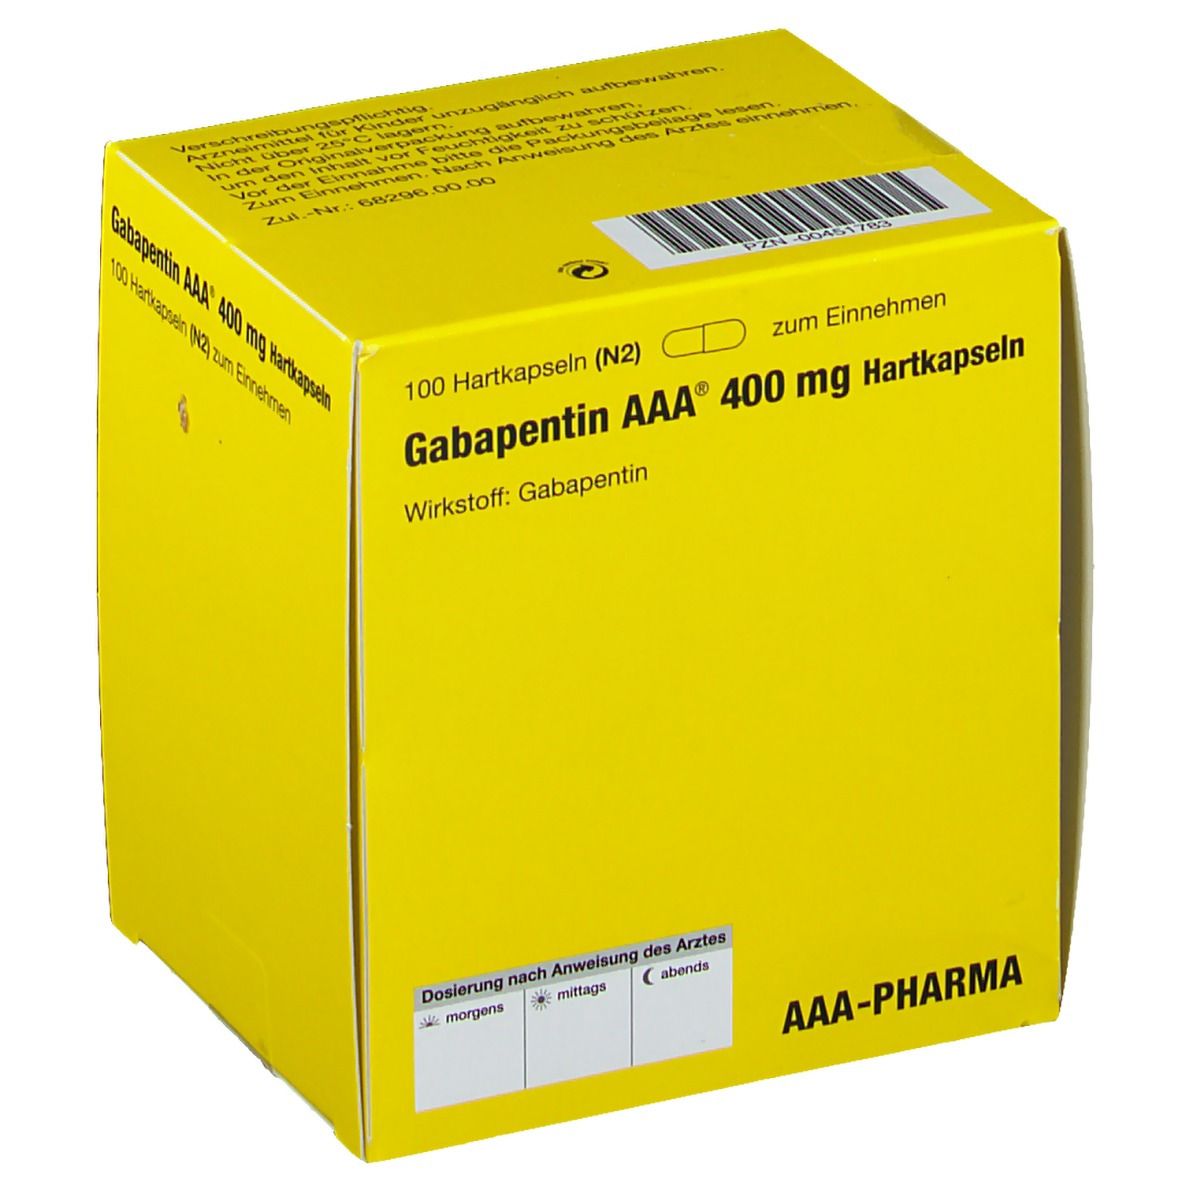 Gabapentin AAA® 400 mg